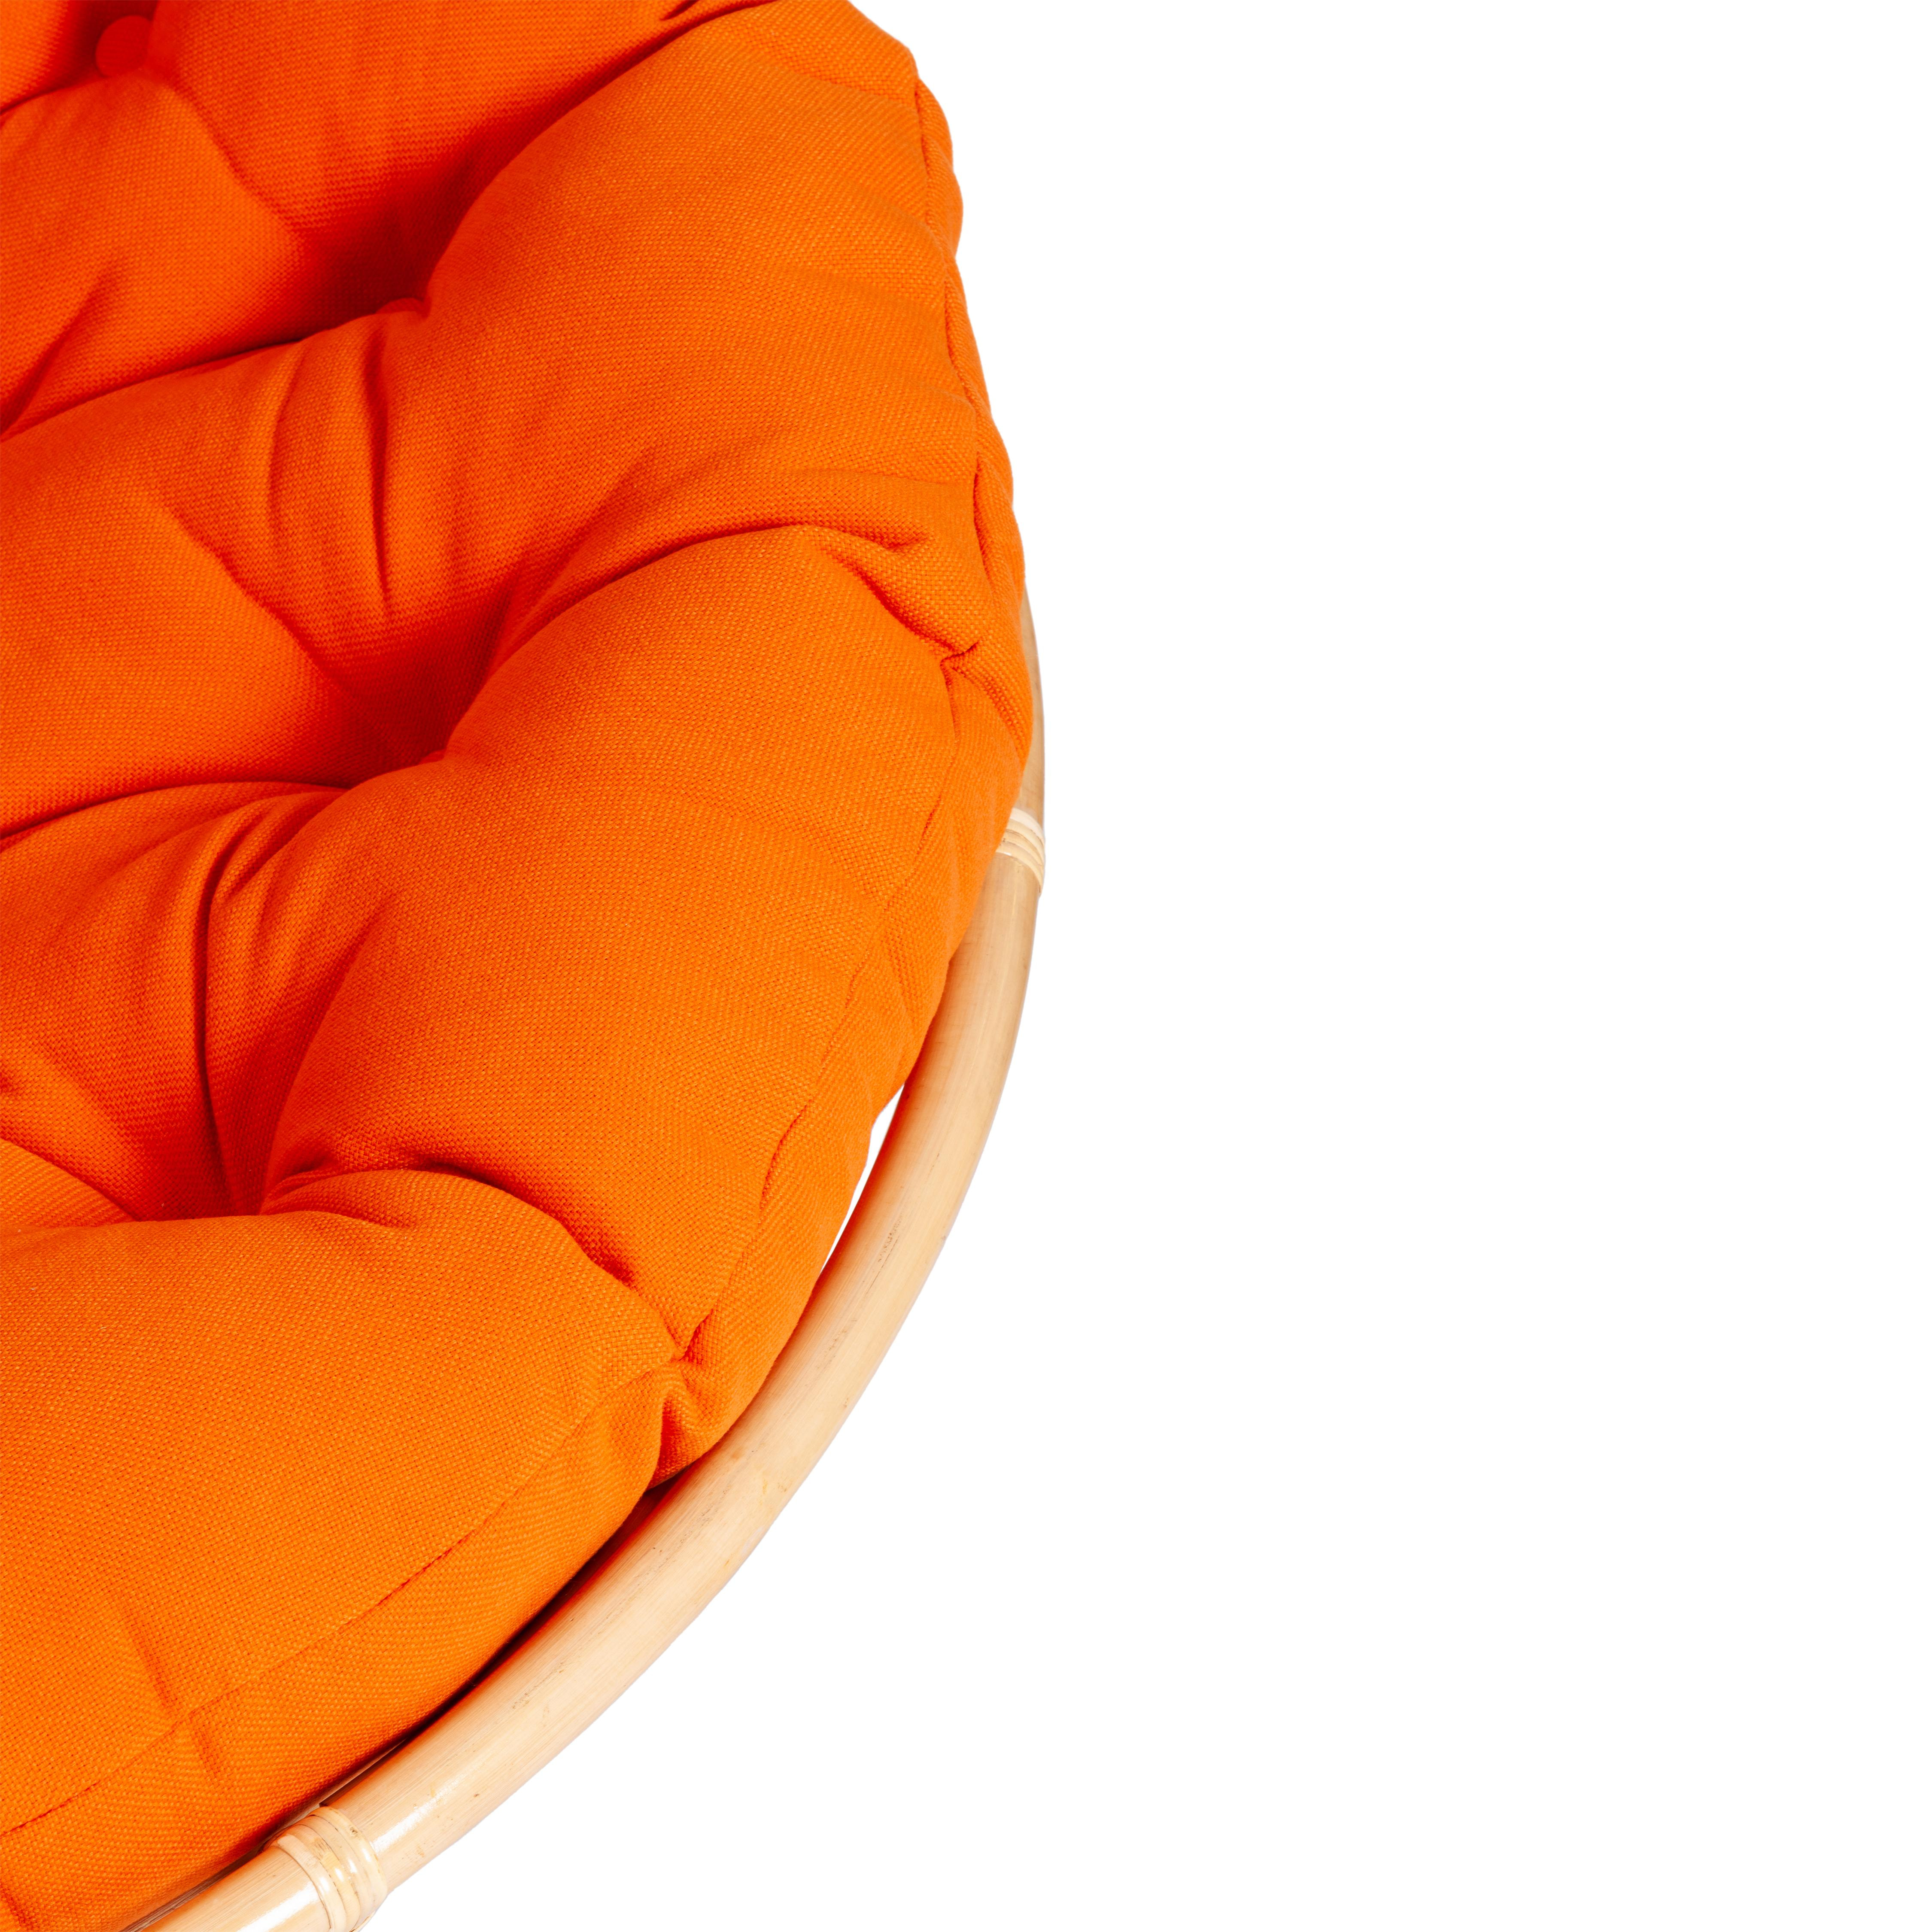 Кресло PAPASAN ECO/ПАПАСАН ЭКО P115-1/SP STD /c подушкой, ремешками/ диаметр подушки 122 см, 115x101x92 см, Natural (натуральный), ткань Оранжевый, С 23